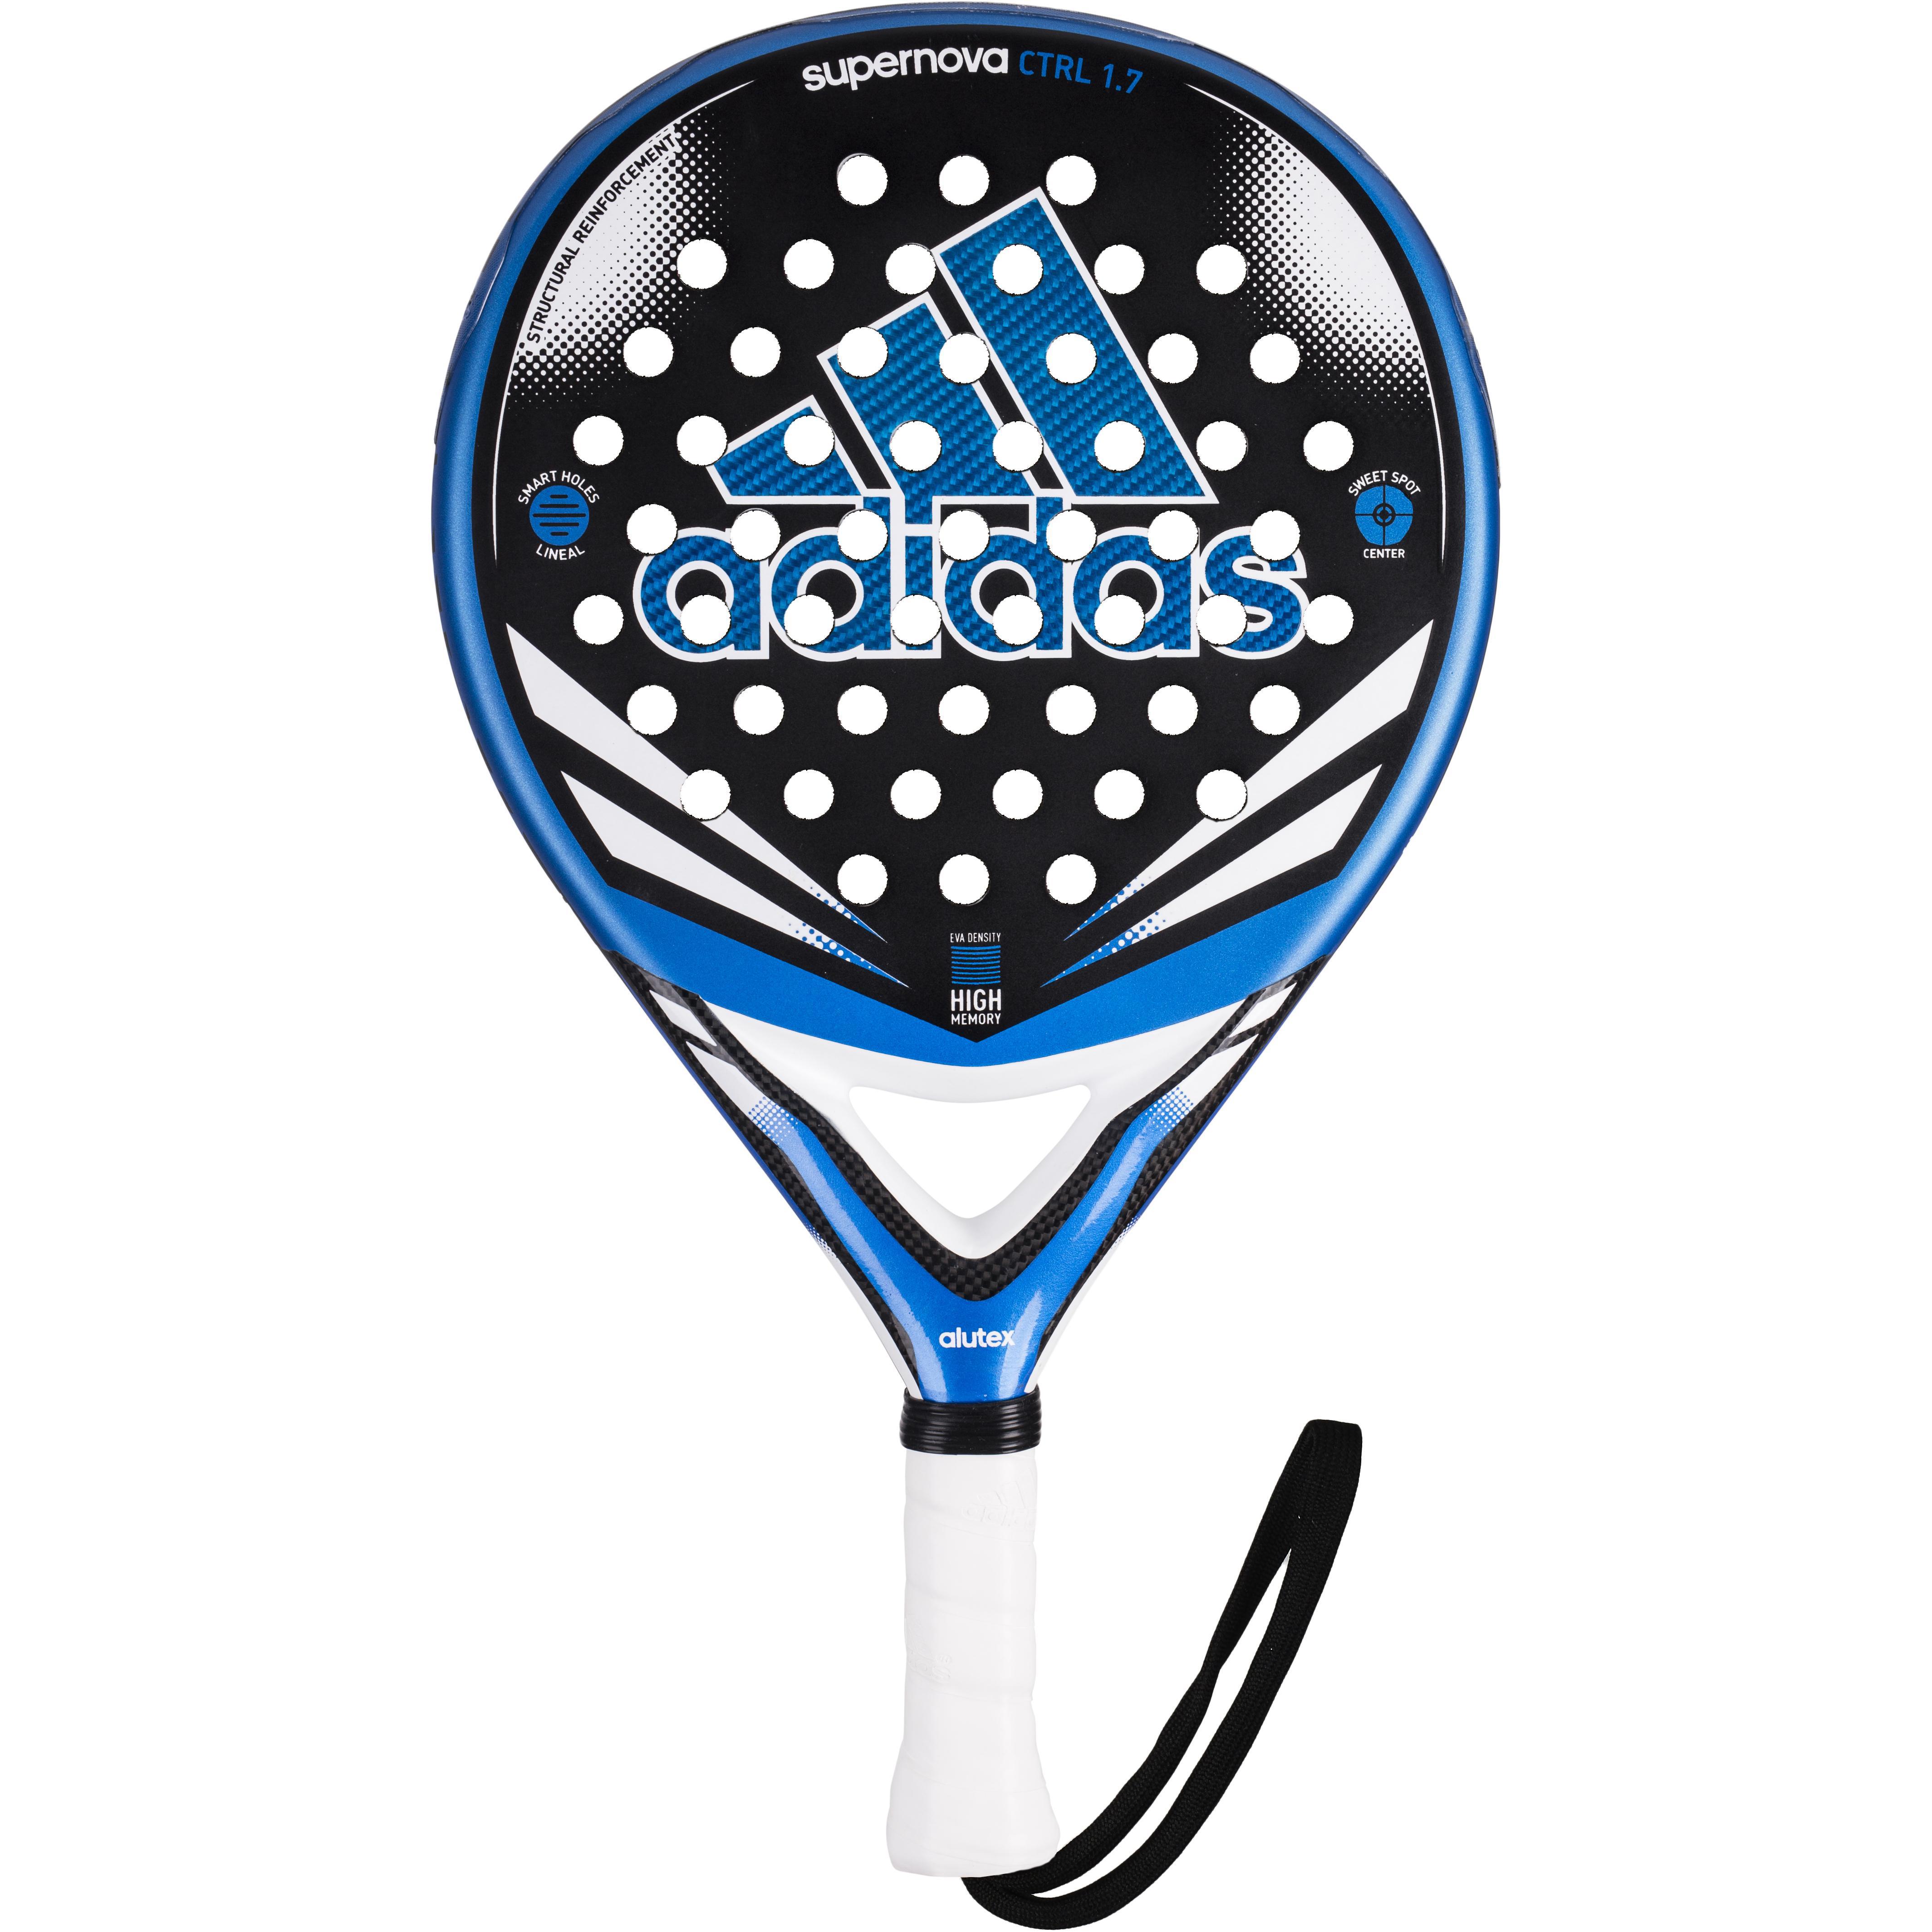 Adidas Supernova Control 1.7 Padel Racket - Black/Blue - Tennisnuts.com